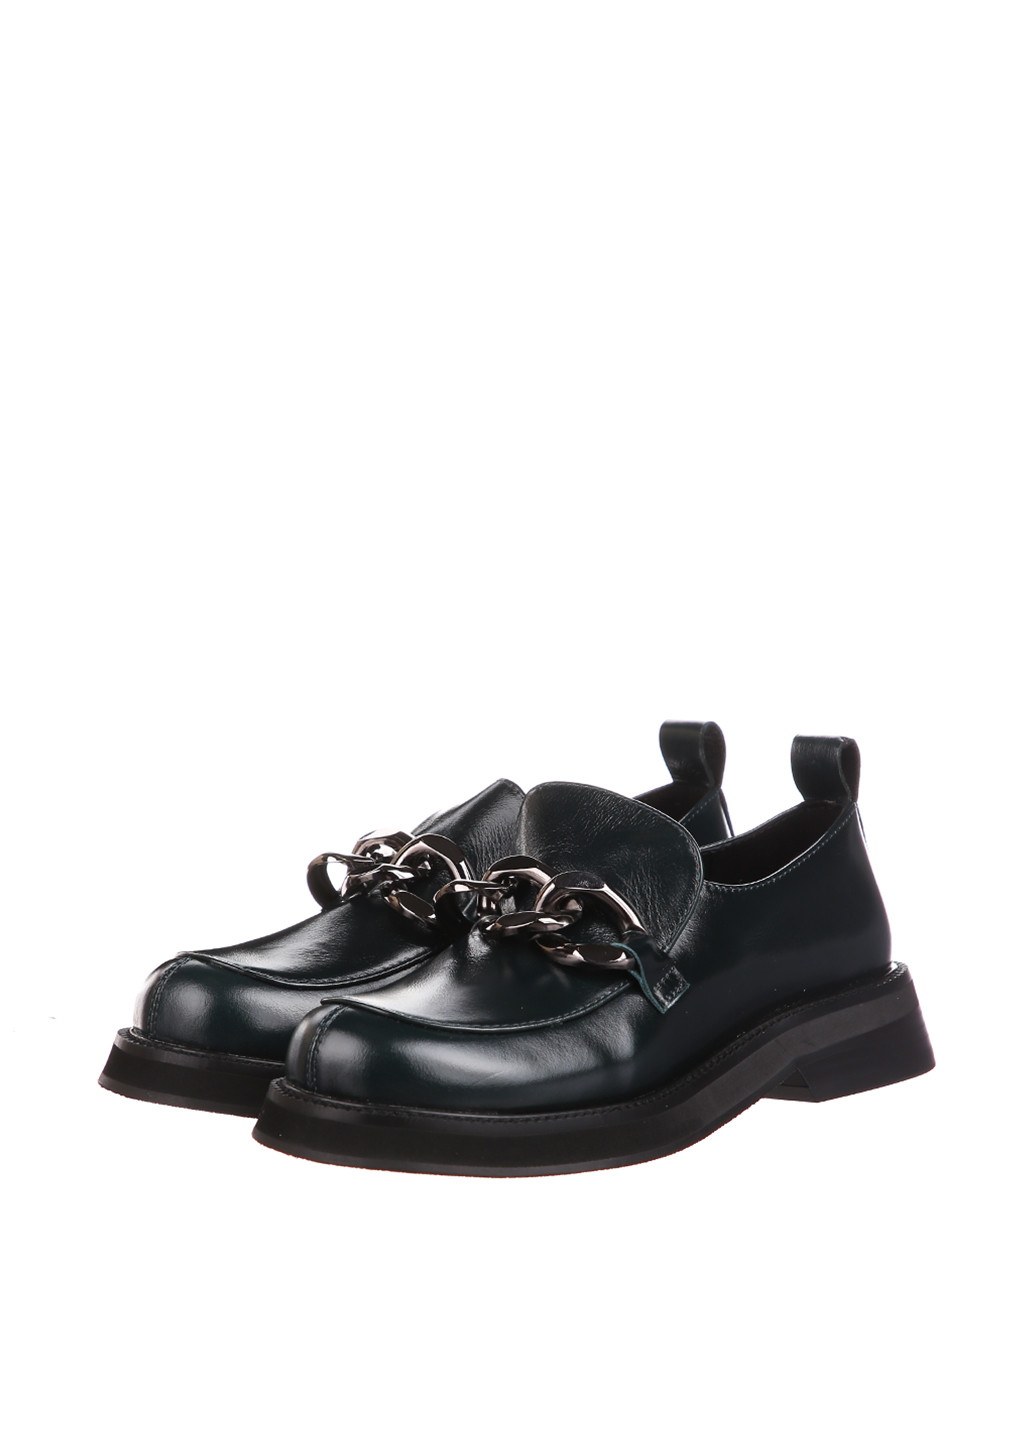 Туфли Blizzarini на низком каблуке с цепочками, лаковые